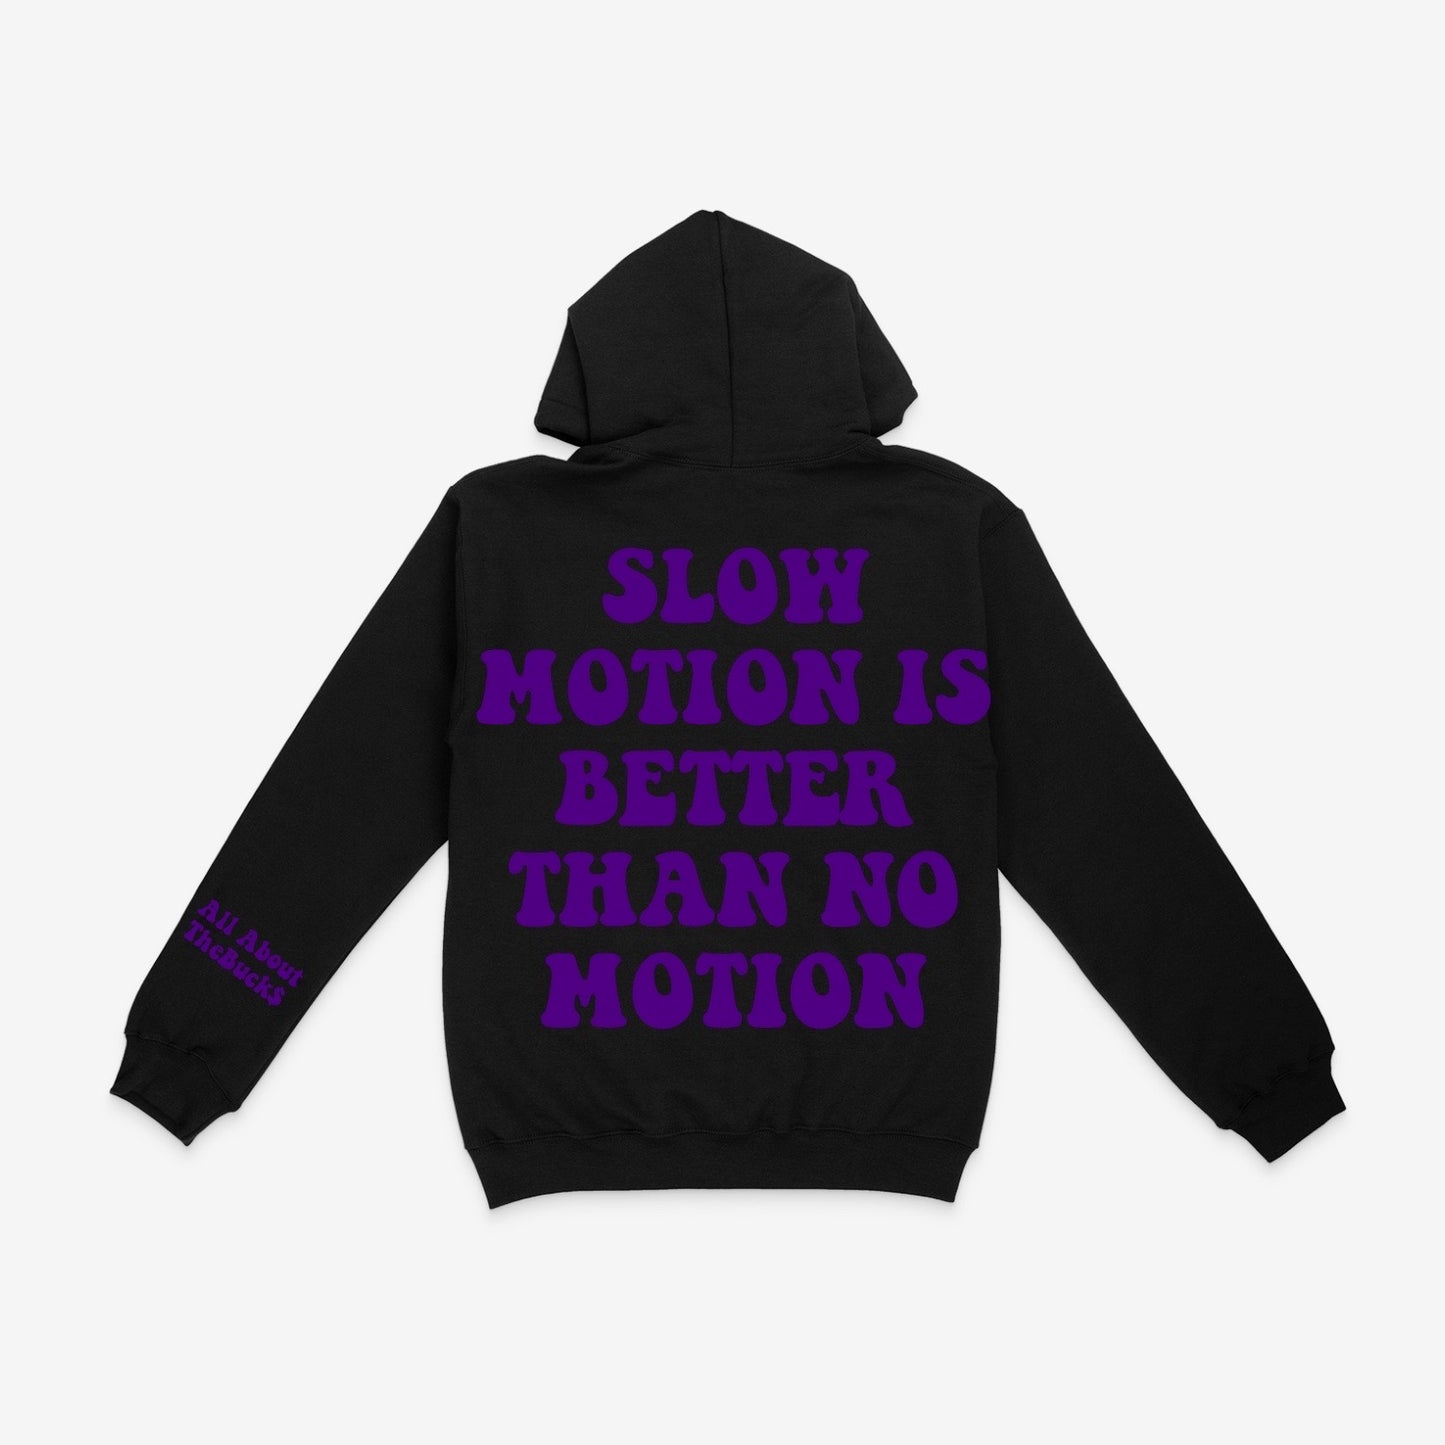 Black/Purple Slow Motion Hoodie